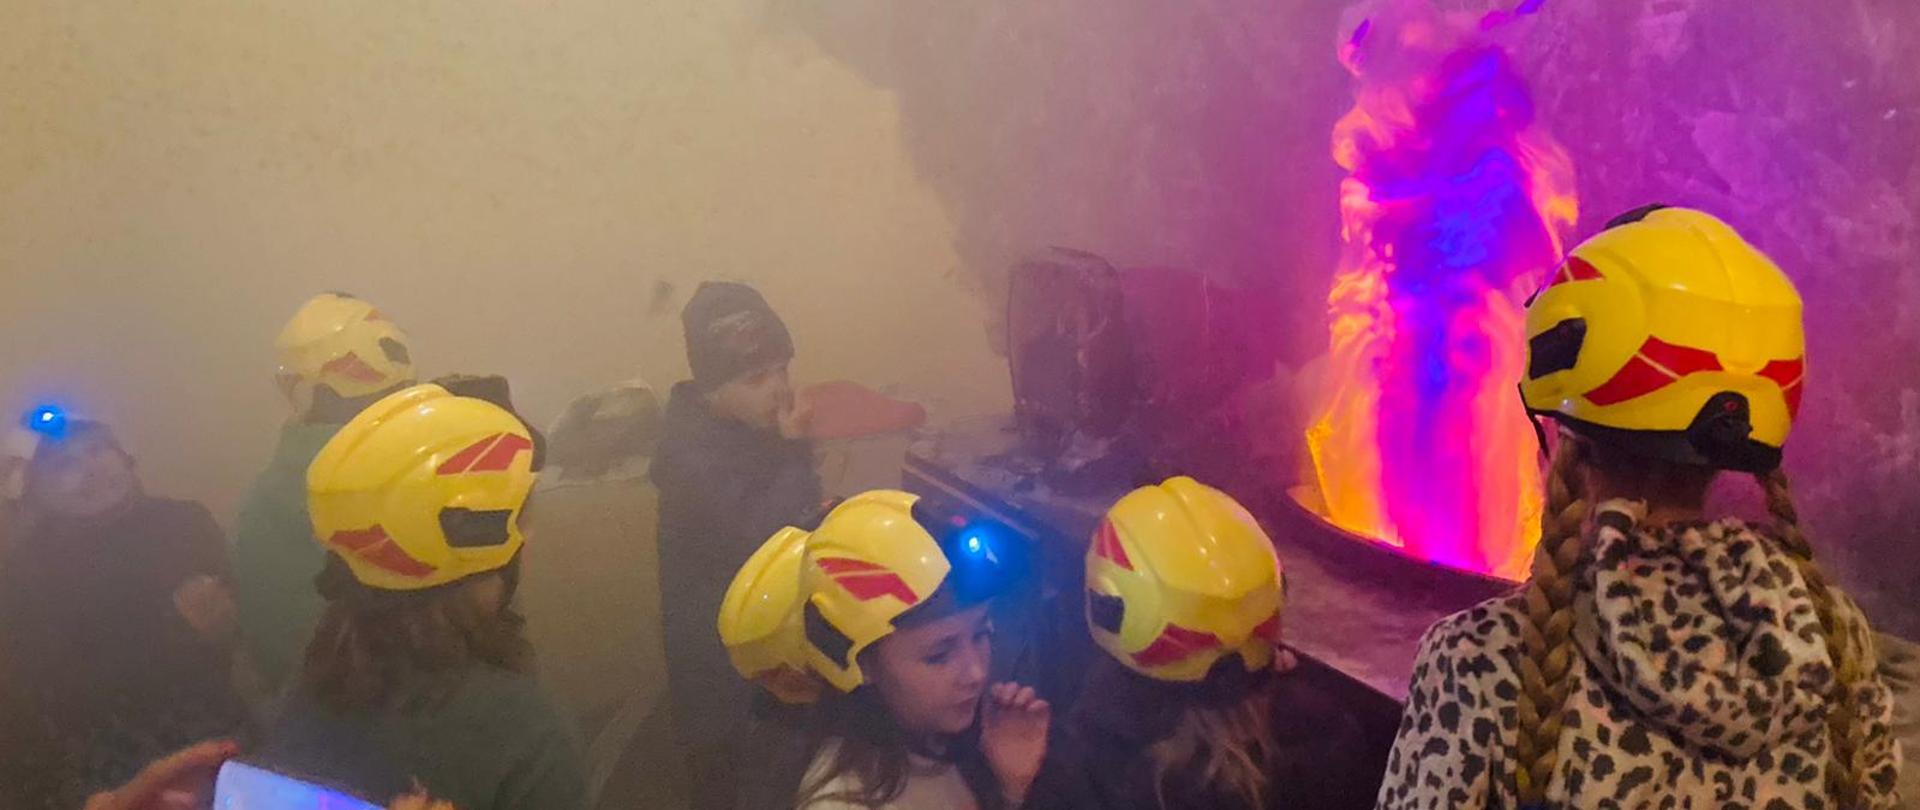 Zdjęcie przedstawia dzieci ubrane w zabawkowe żółte kaski, w pomieszczeniu kuchni symulującej pożar i zadymienie